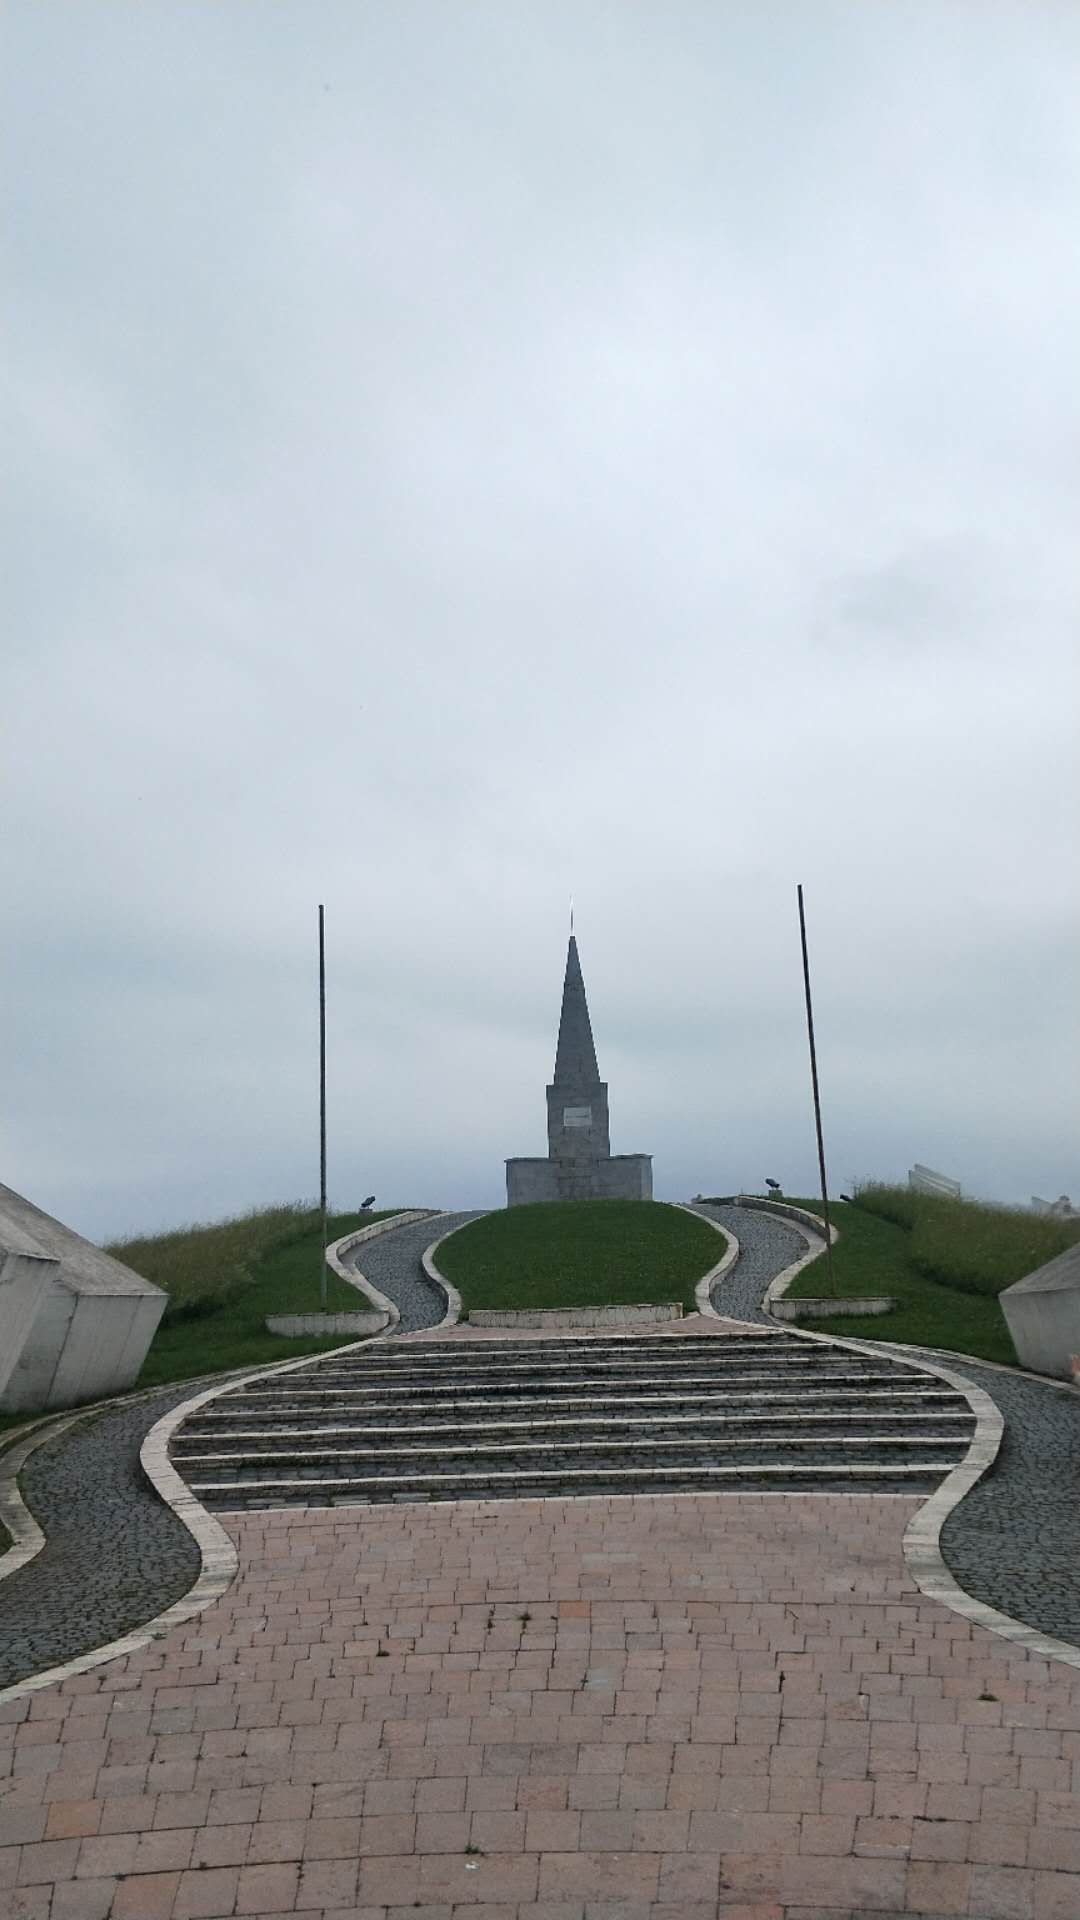 乌日策  二战纪念碑。 当年铁托在此建了个“乌日策共和国“，反抗德国纳粹。